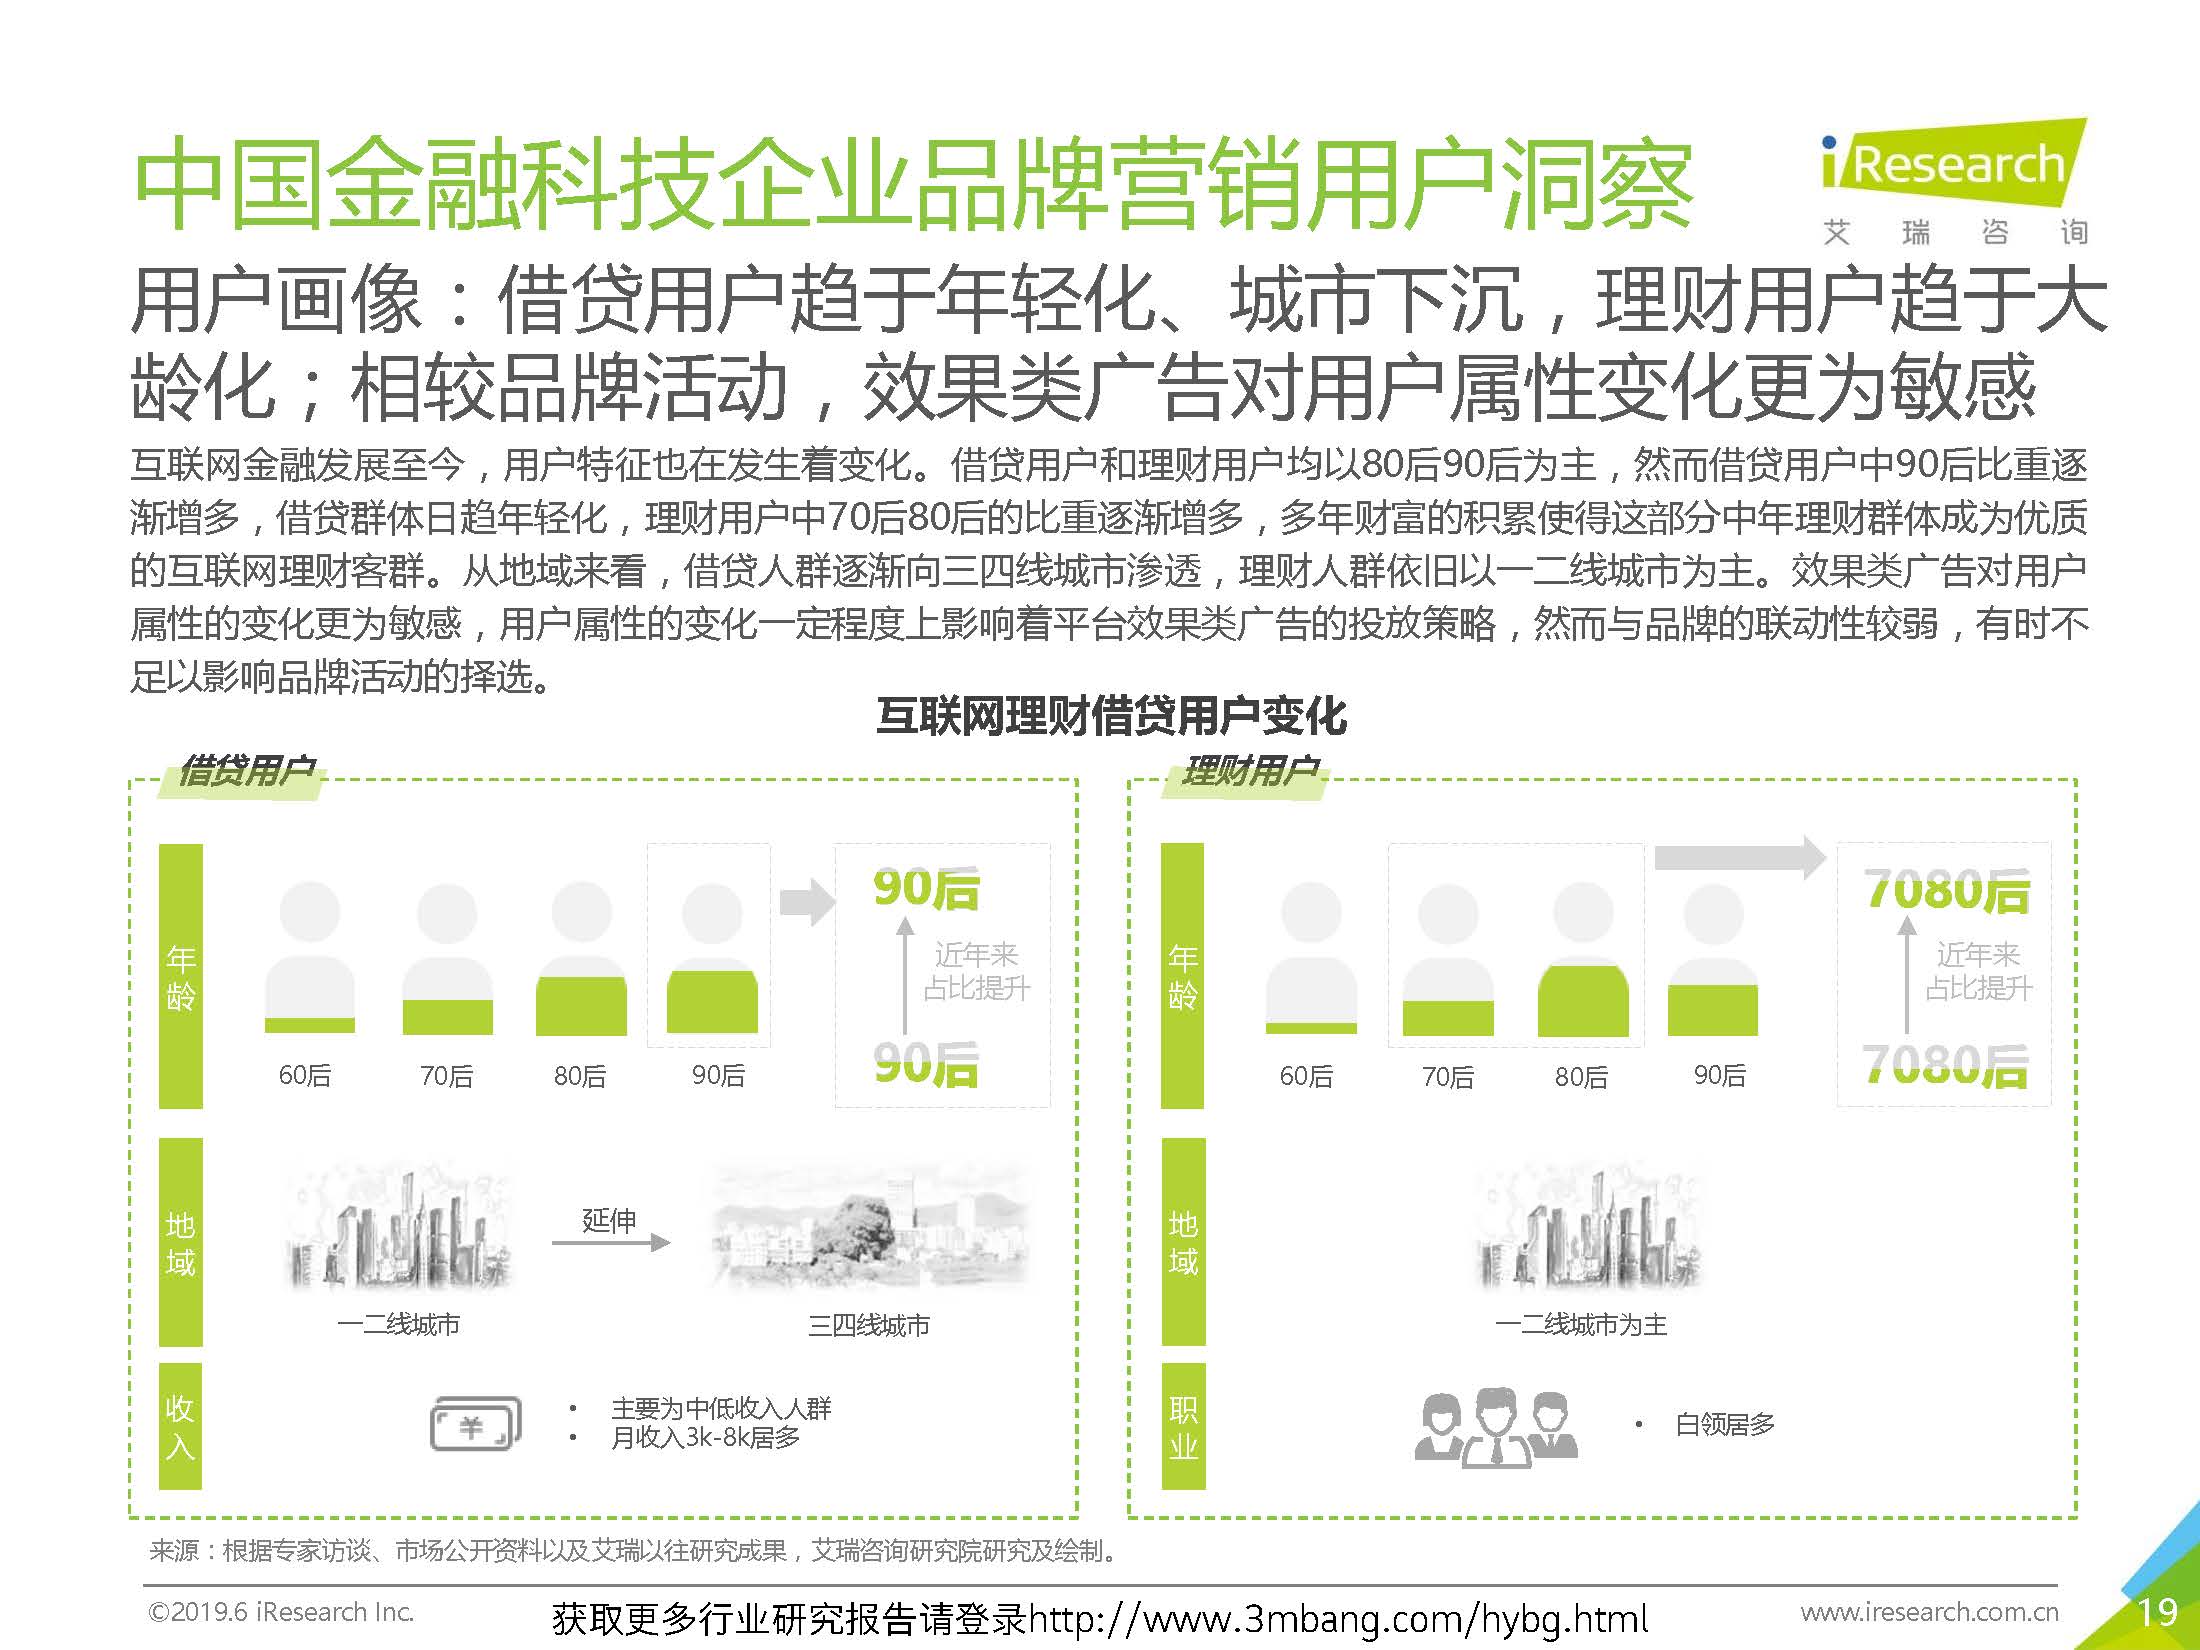 艾瑞：2019年-静待惊蛰-中国金融科技企业品牌营销研究报告(37页)_页面_19.jpg